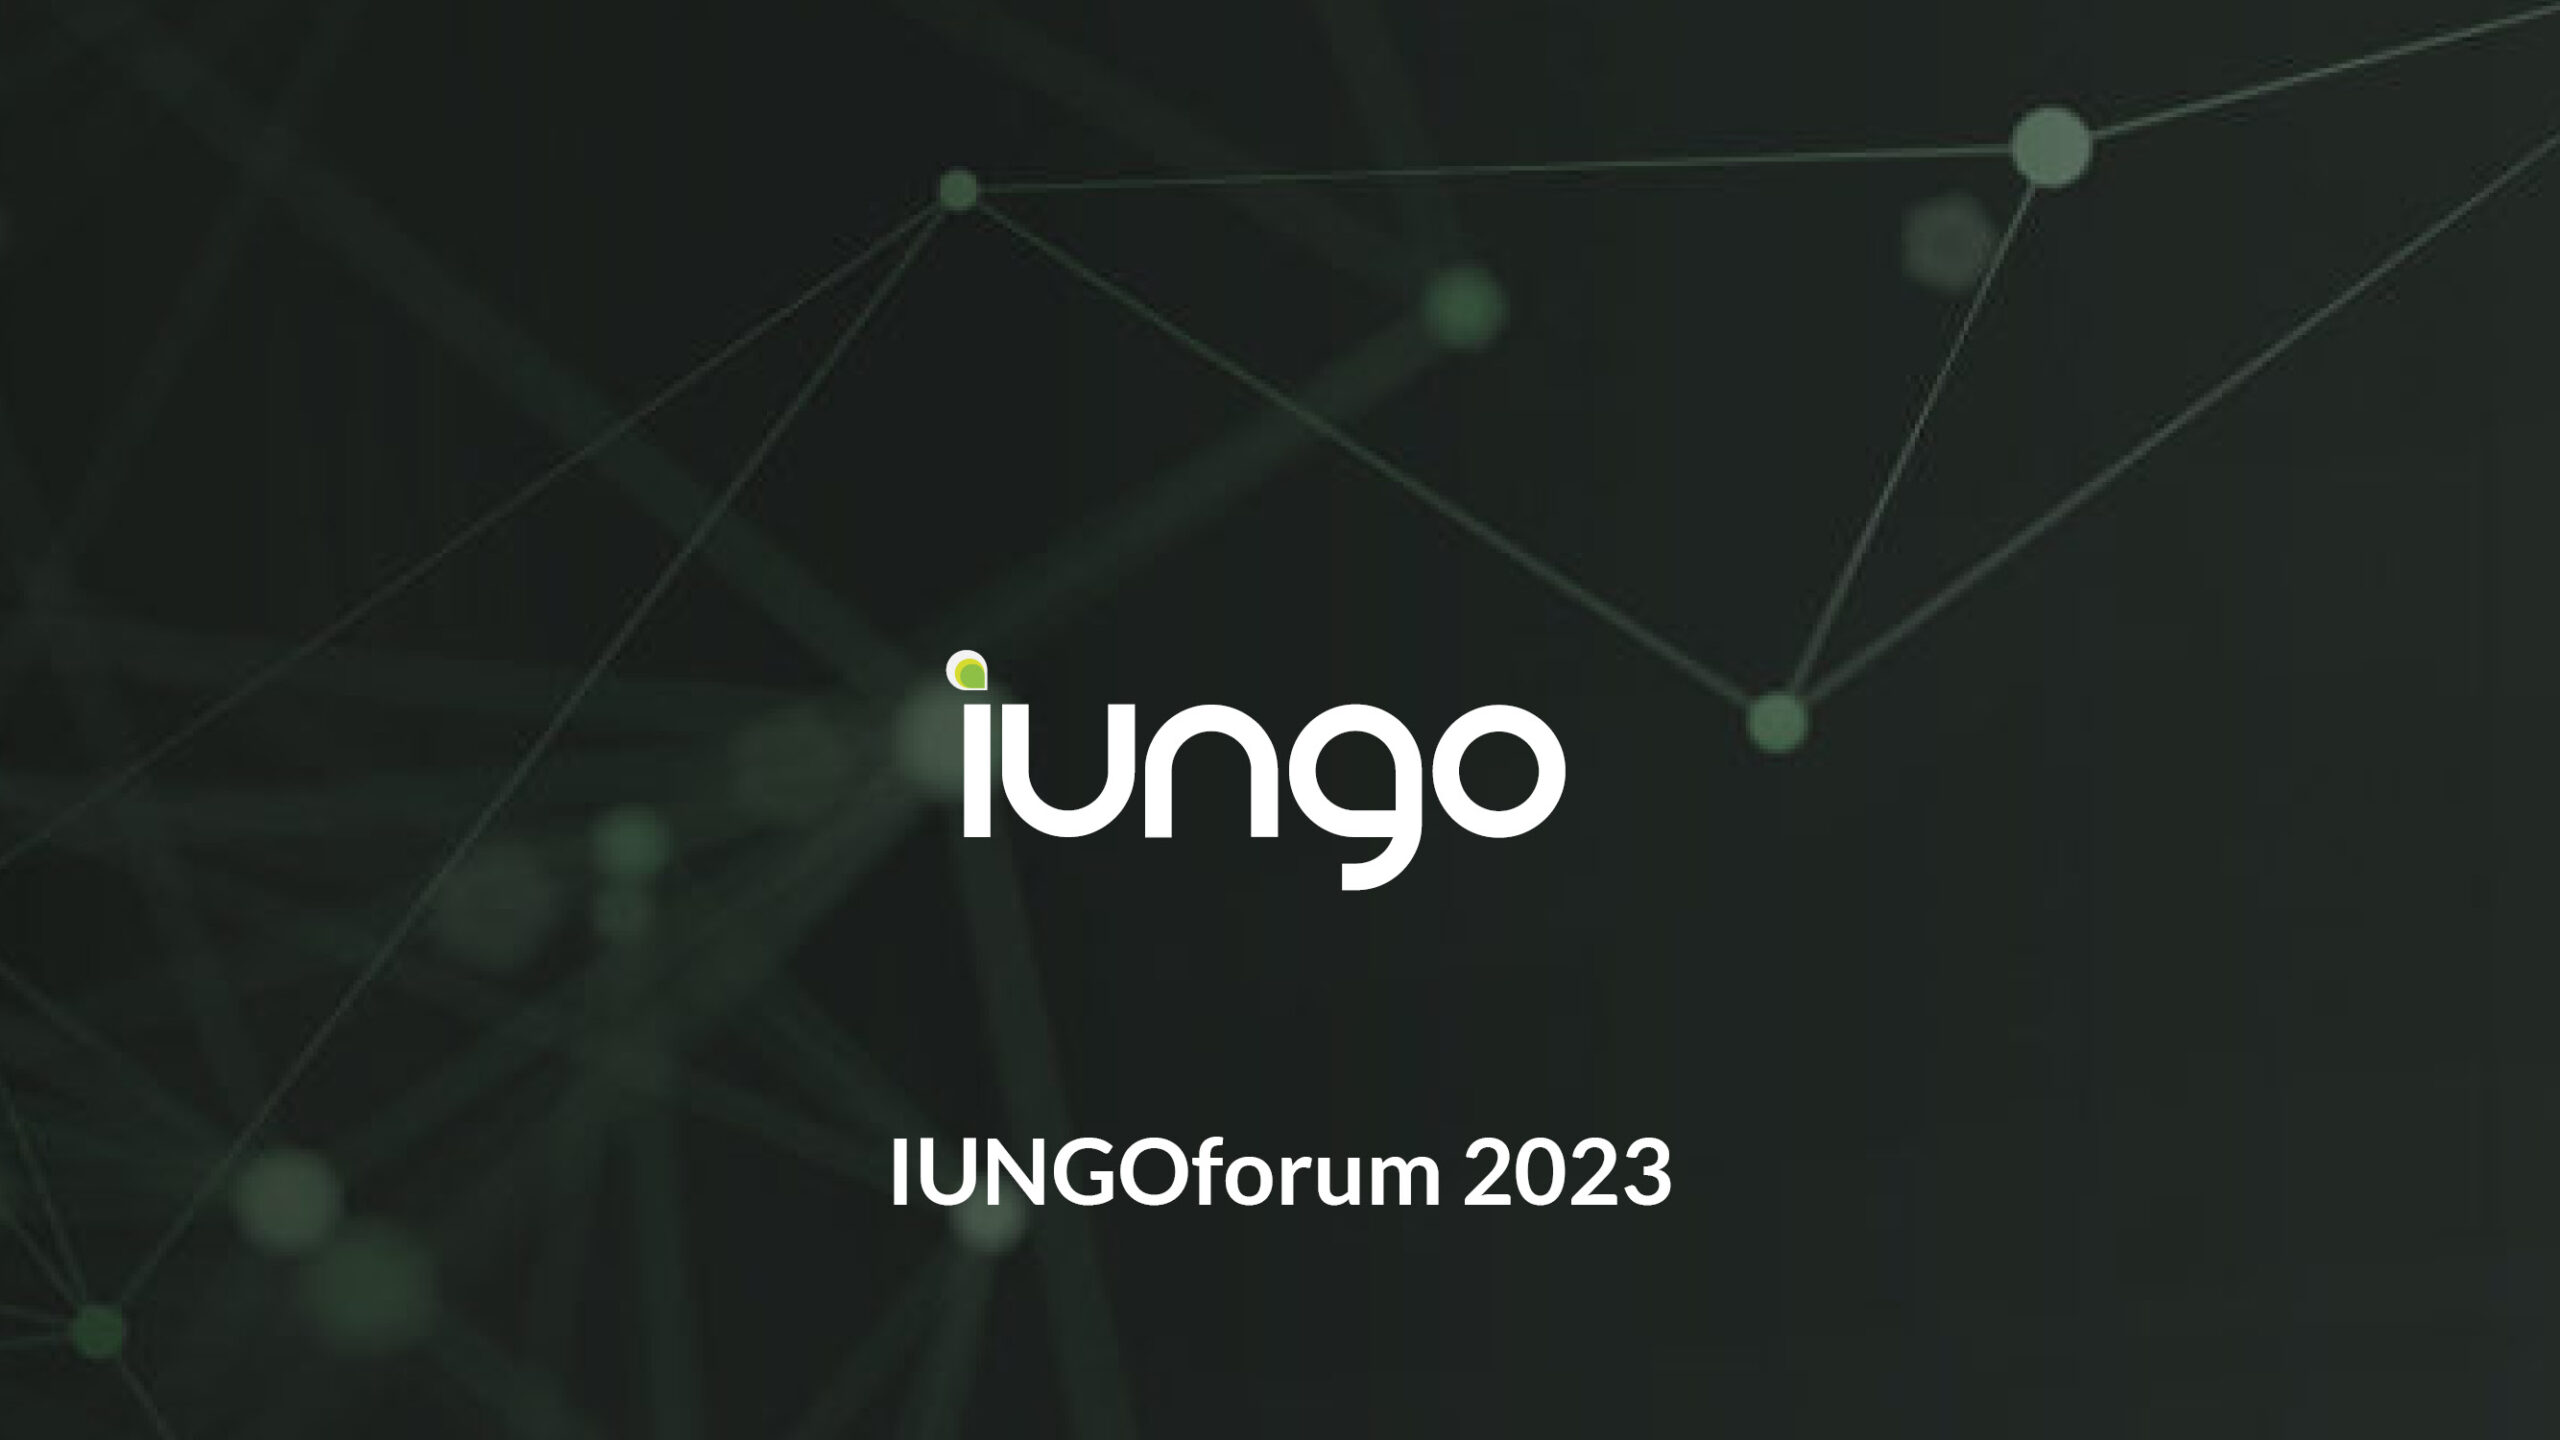 iungoforum 2023